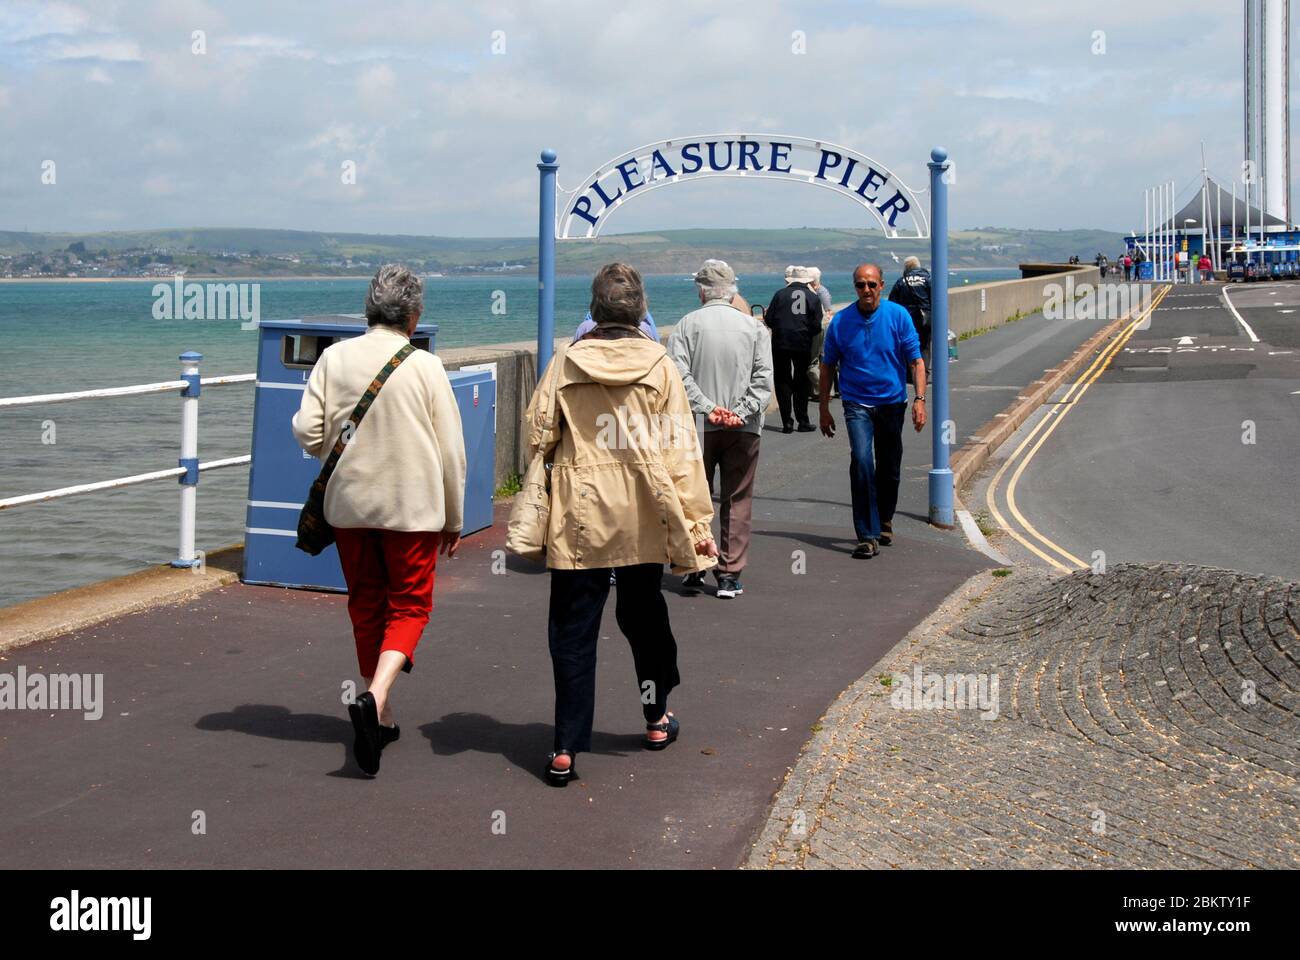 Grupos de ancianos que entran y salen del Pleasure Pier, Weymouth, Dorset, Inglaterra Foto de stock